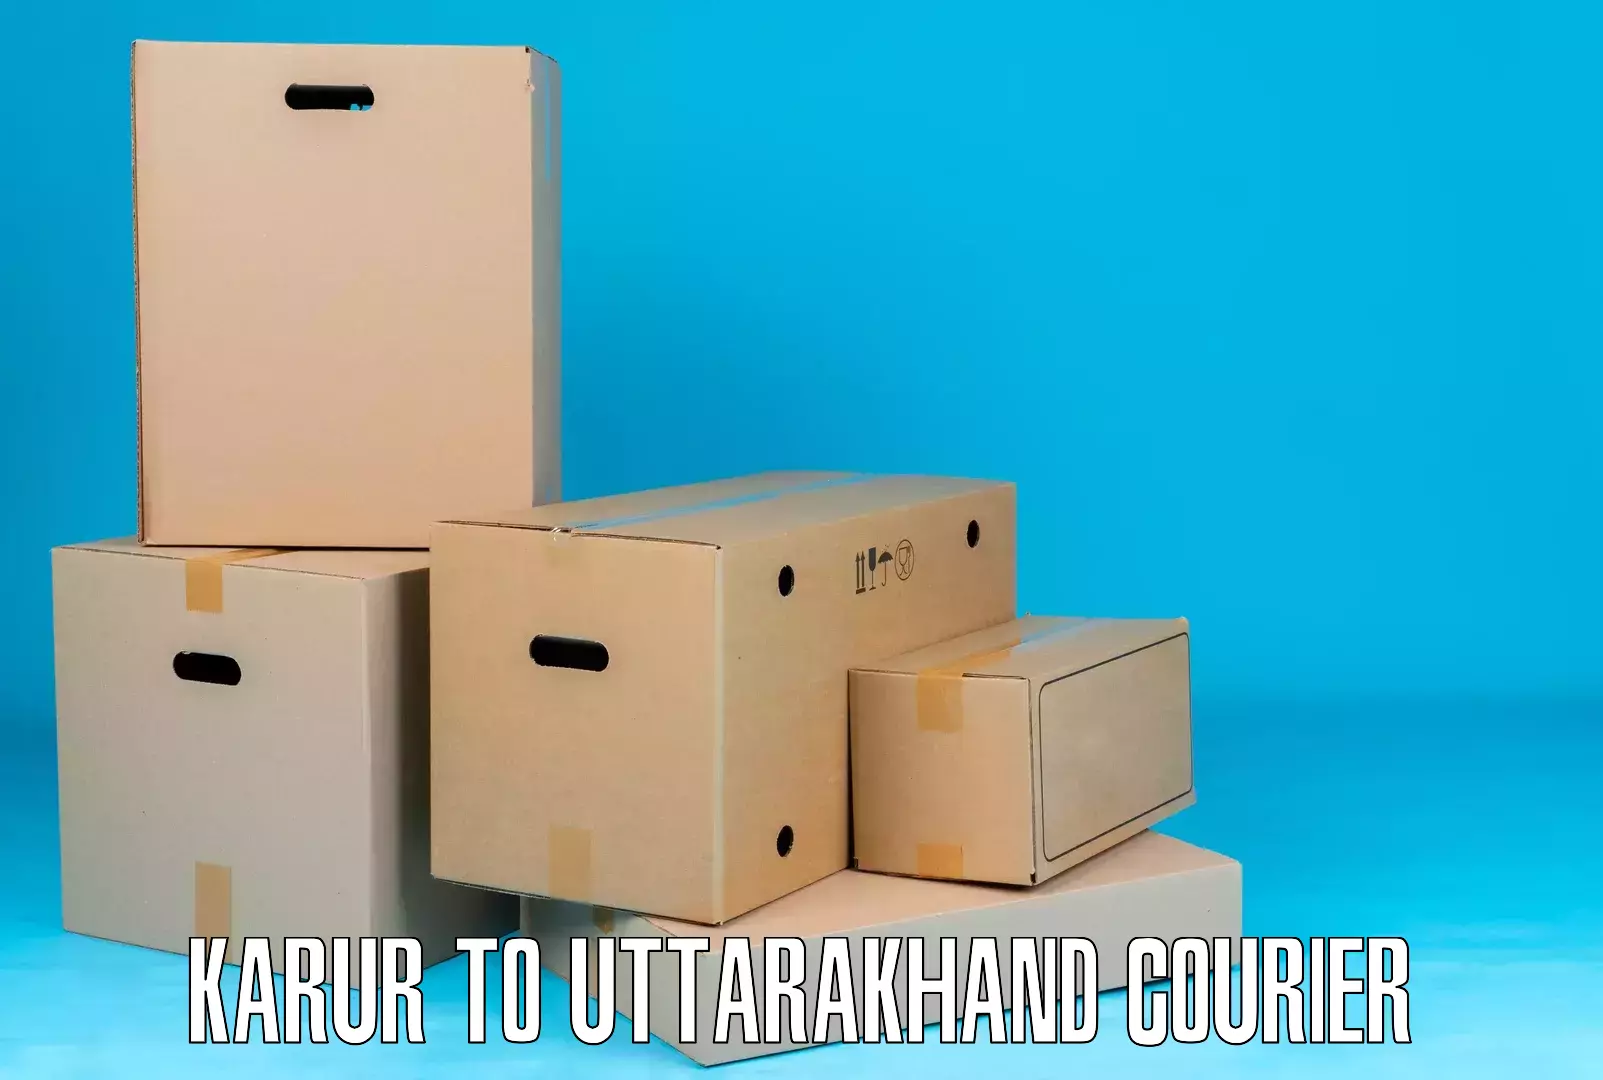 Global shipping solutions Karur to Uttarakhand